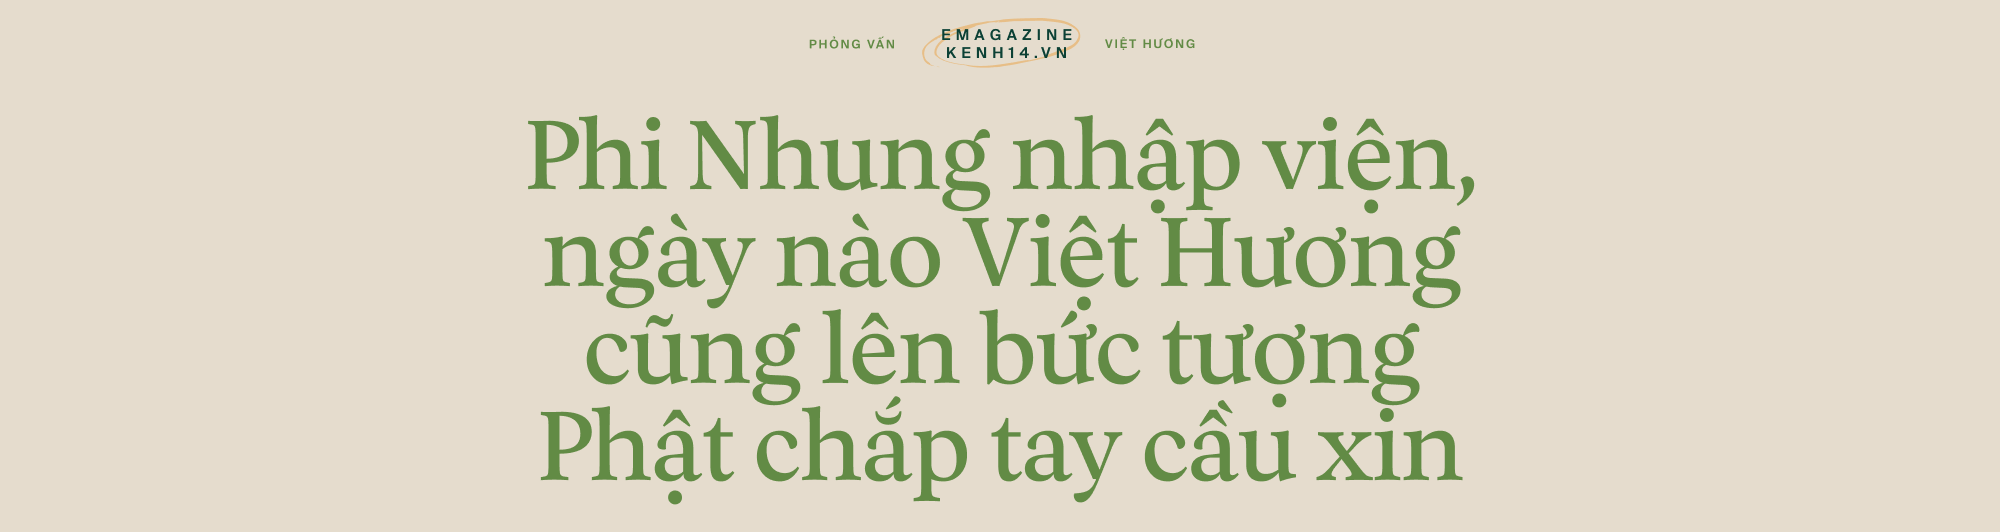 Việt Hương: Đã có nhiều người gọi điện nắm tay tôi nói sẽ cố sống, nhưng qua hôm sau tôi phải đưa áo quan tới-12